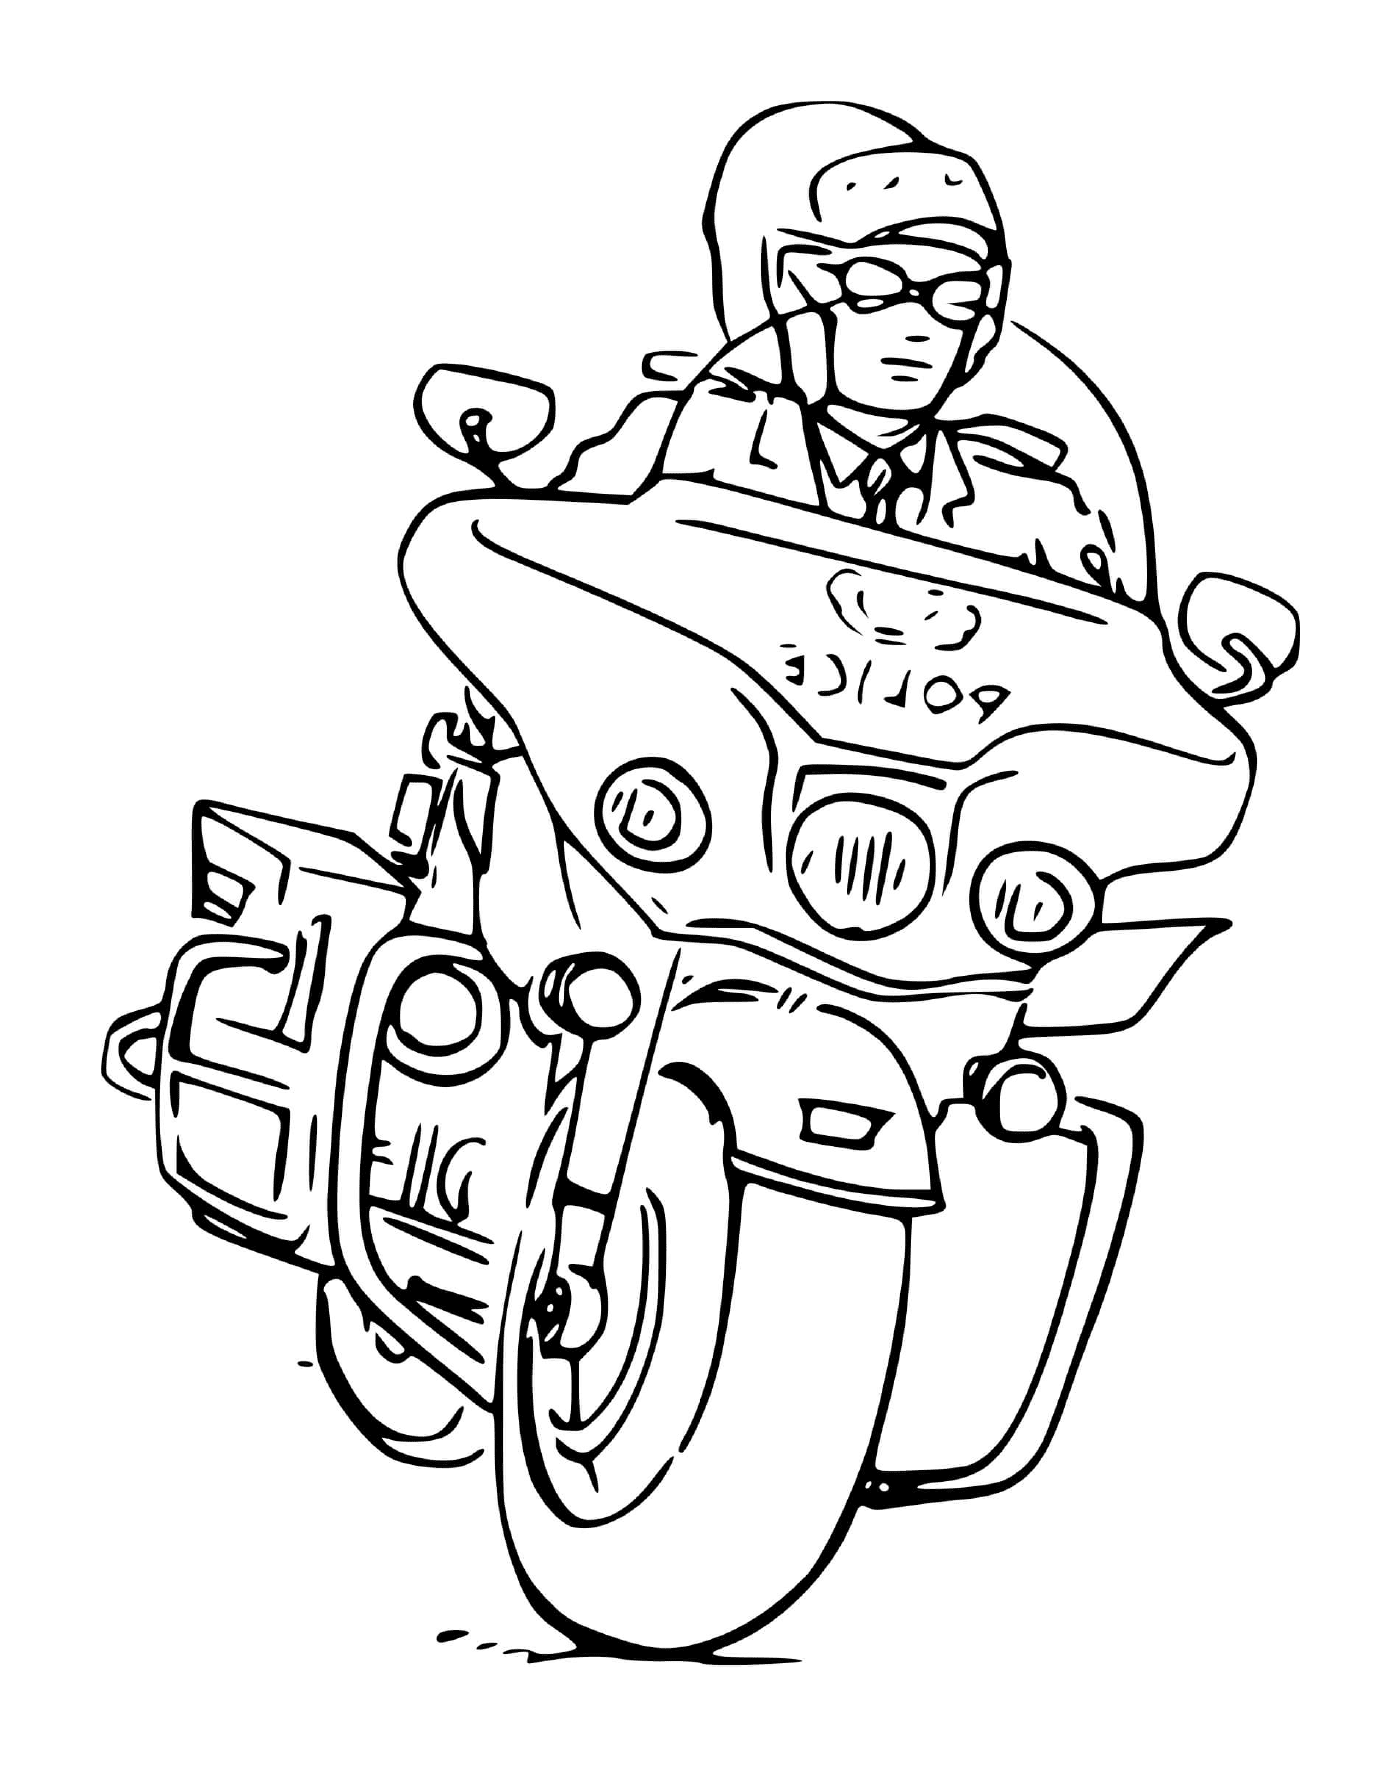  Motocicletta della polizia 